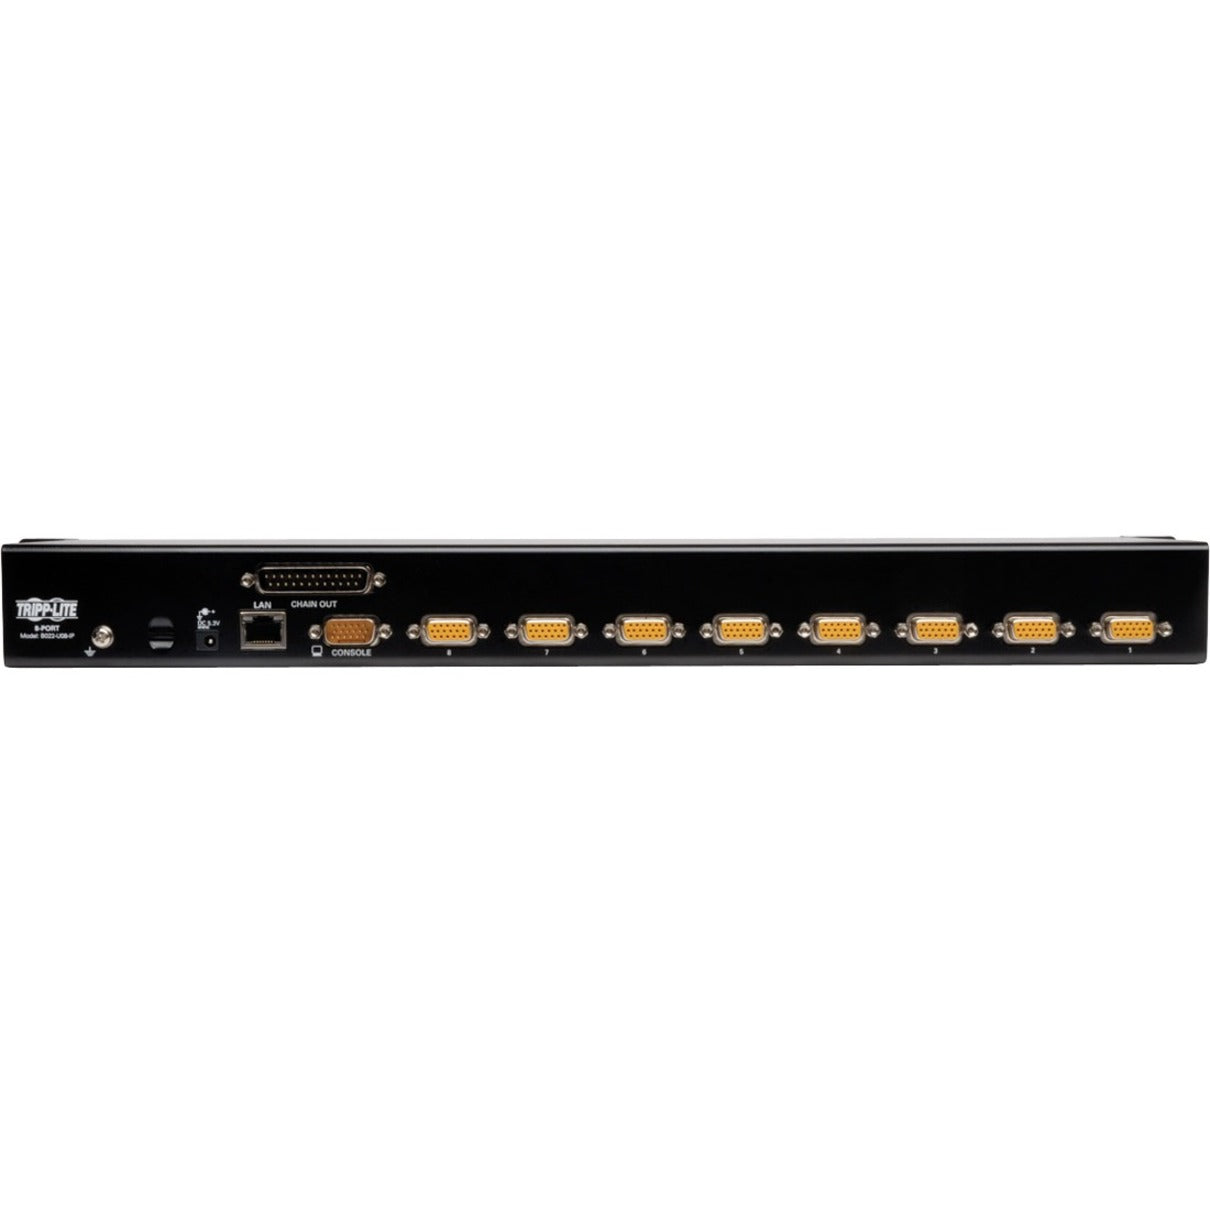 Tripp Lite B022-U08-IP NetDirector 1U Rackmount IP KVM Switch 8-Port QXGA 2048 x 1536 3 Year Warranty